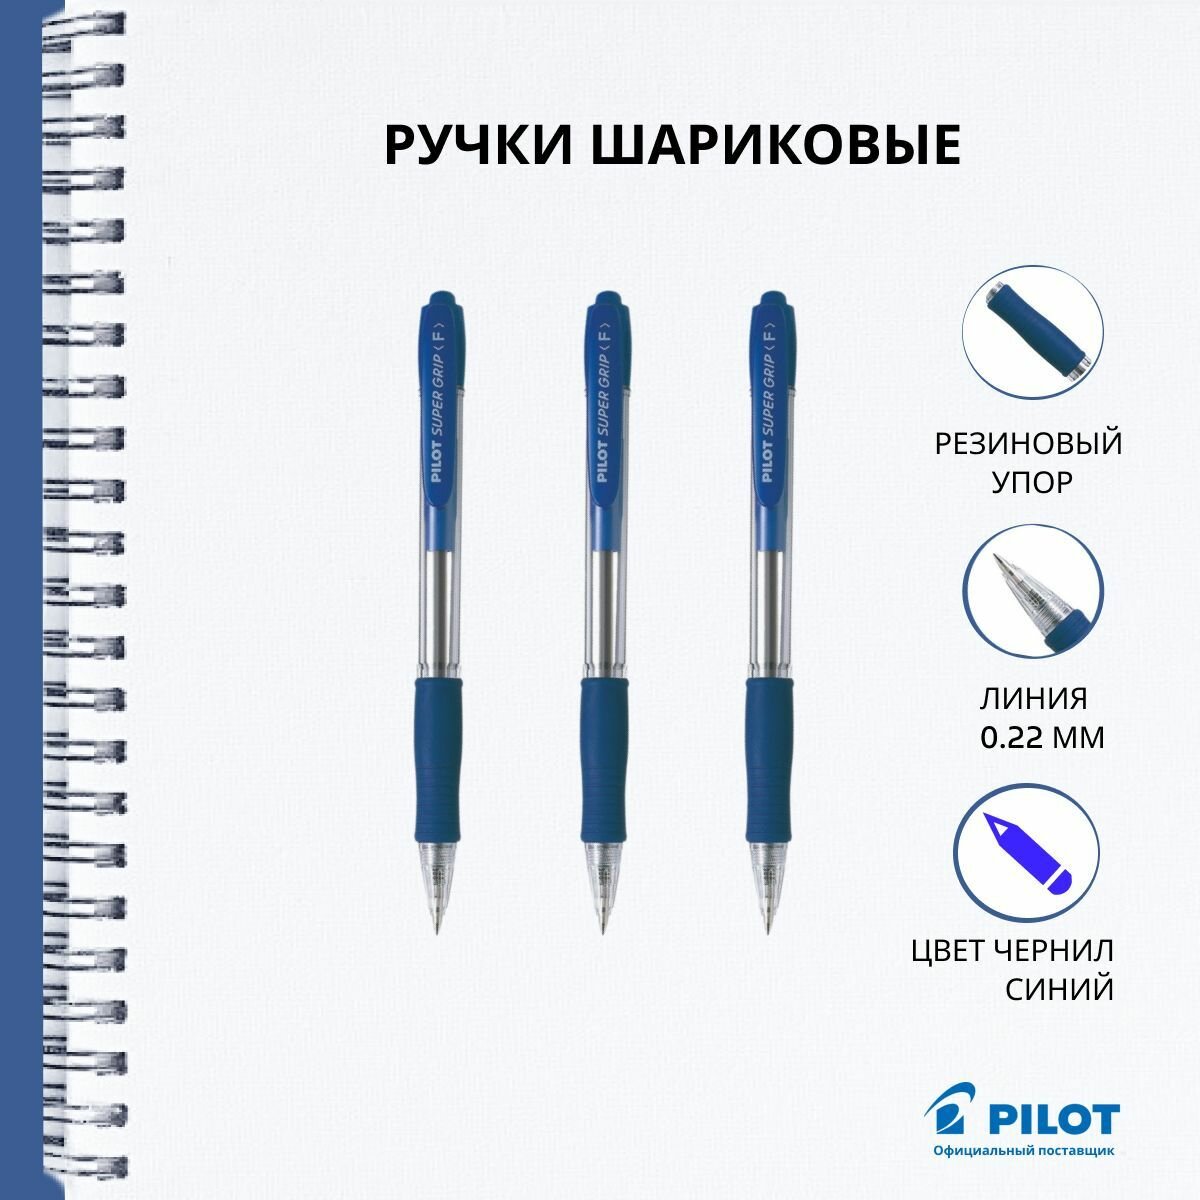 Ручка шариковая автоматическая Pilot, масляные чернила, синяя, 0.22 мм, набор 3 штуки